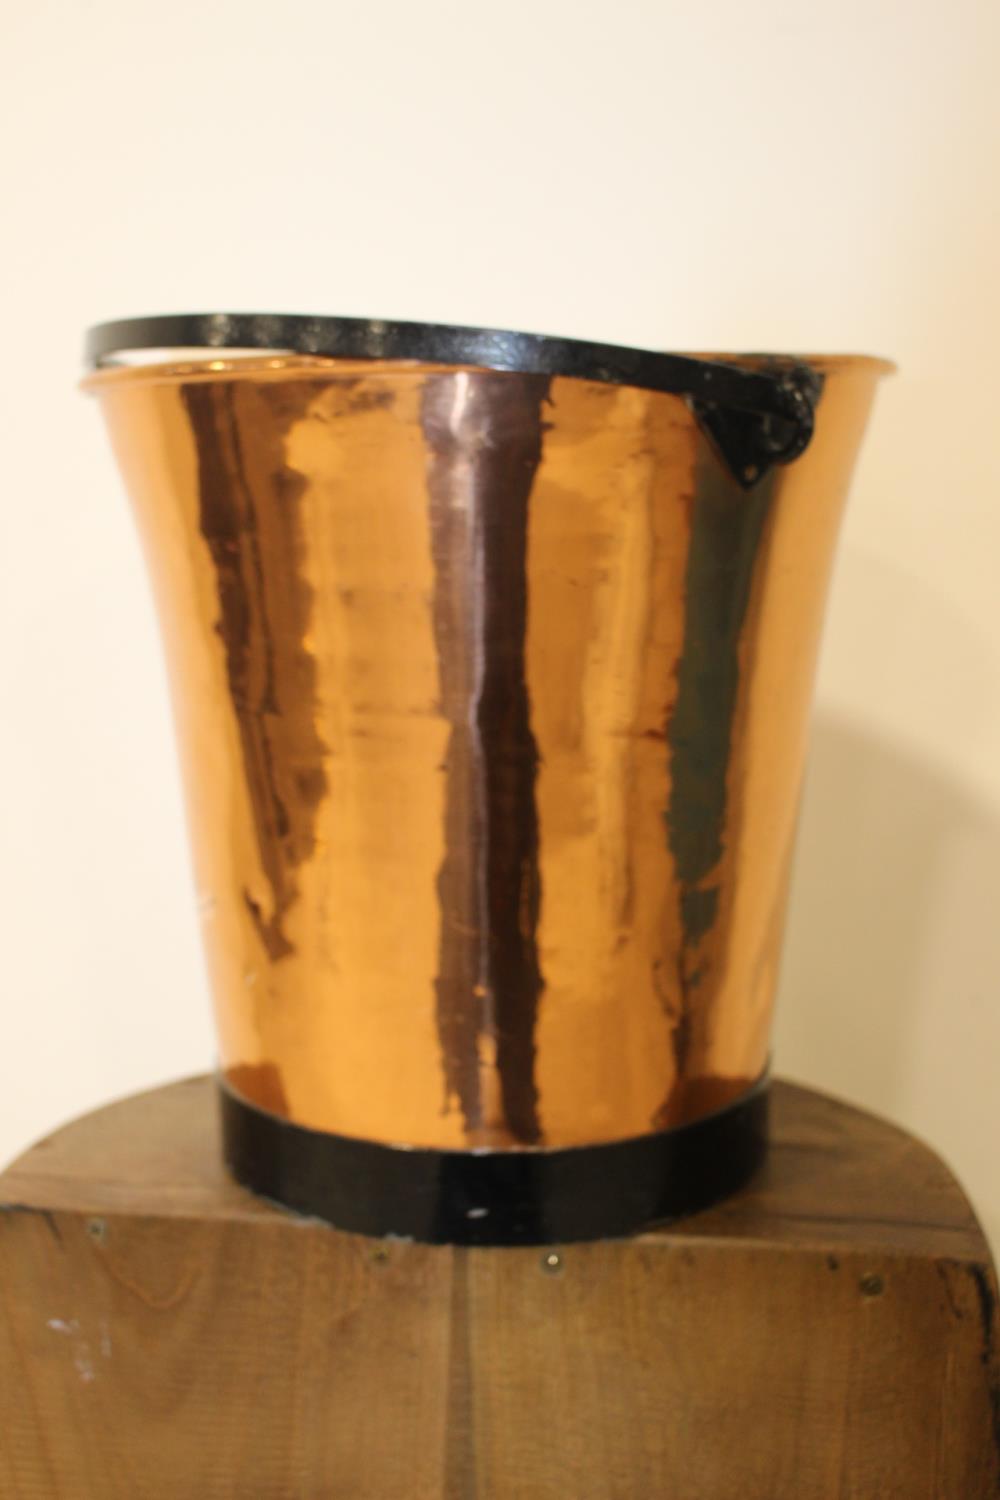 Copper coal bucket with metal handle.